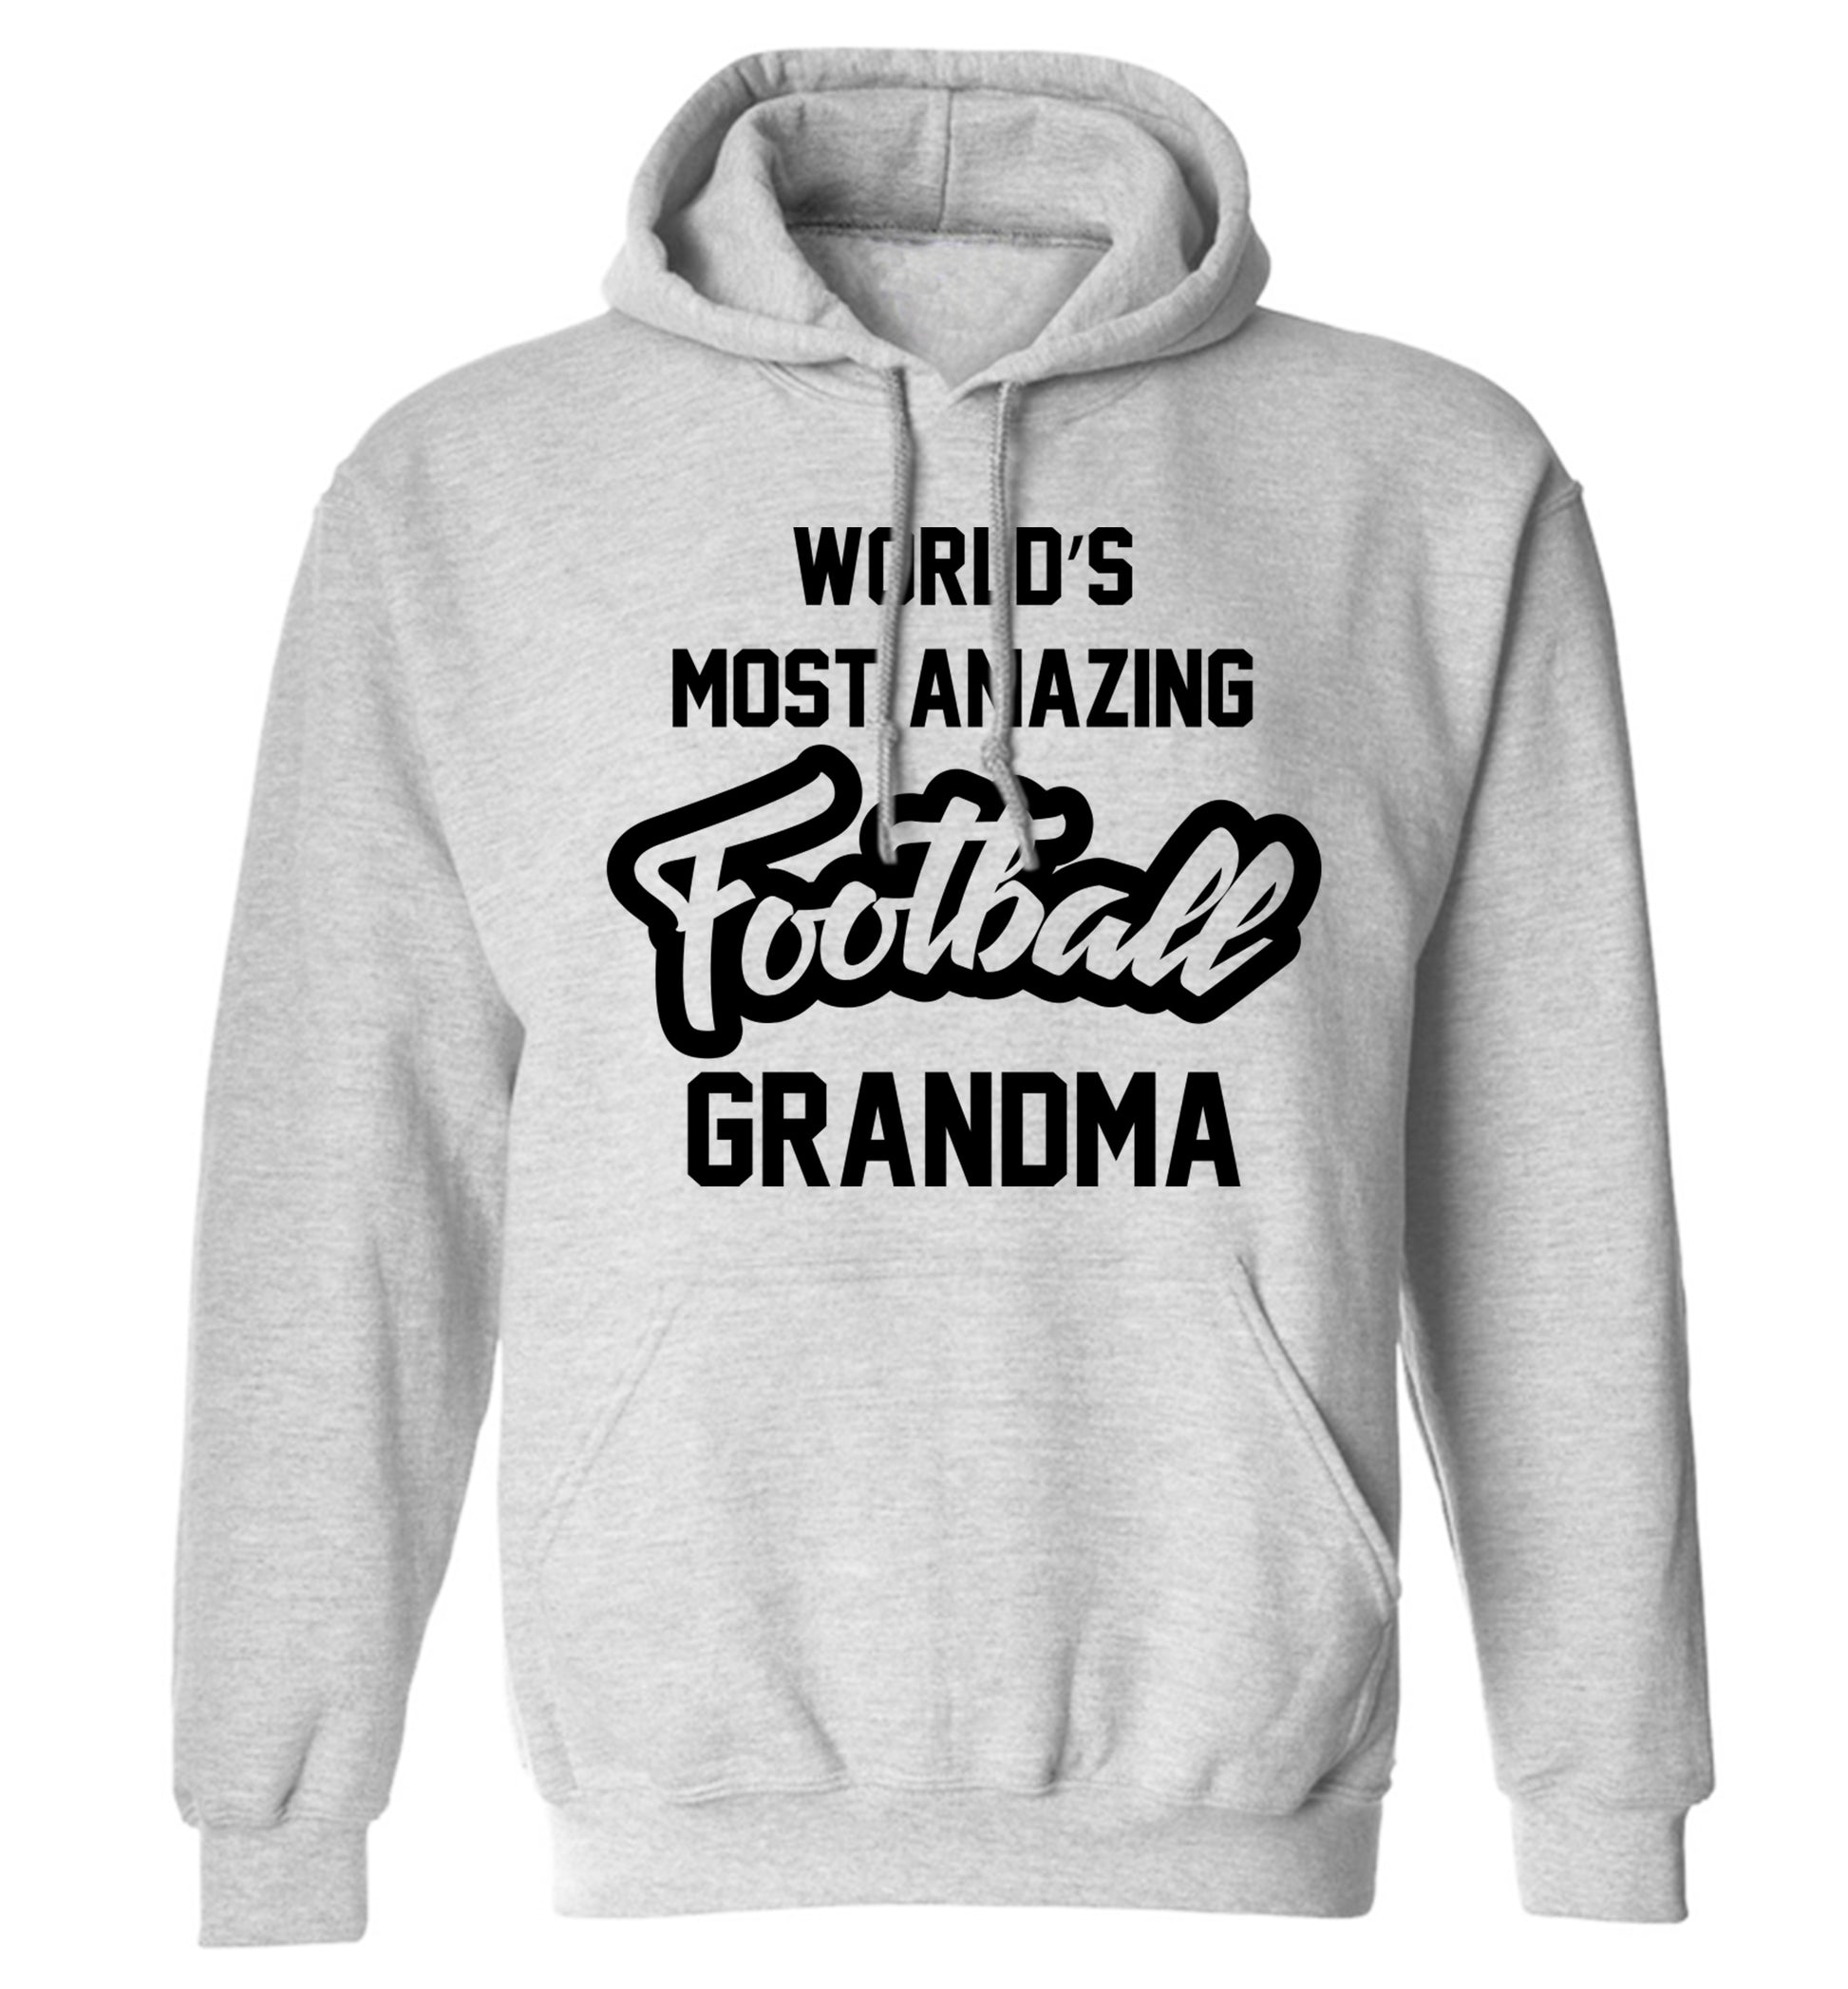 Worlds most amazing football grandma adults unisexgrey hoodie 2XL